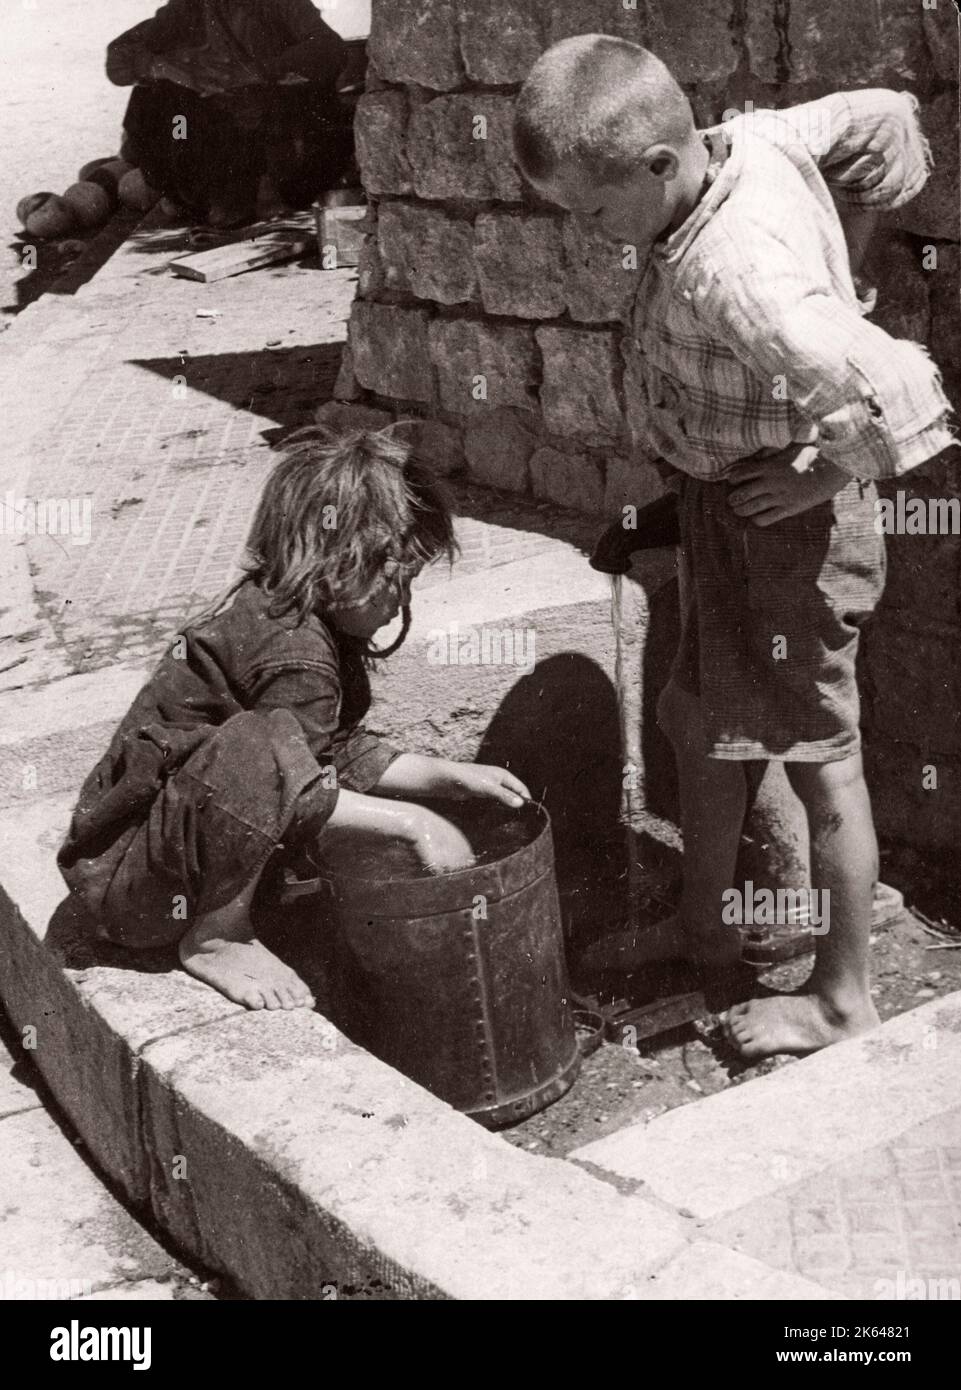 1843 - Syrie - les enfants qui reçoivent de l'eau d'un puits Photographie par un officier de recrutement de l'armée britannique en poste en Afrique de l'est et au Moyen-Orient pendant la Seconde Guerre mondiale Banque D'Images